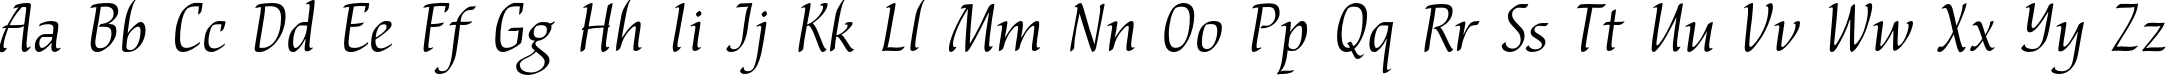 Пример написания английского алфавита шрифтом NataliScript